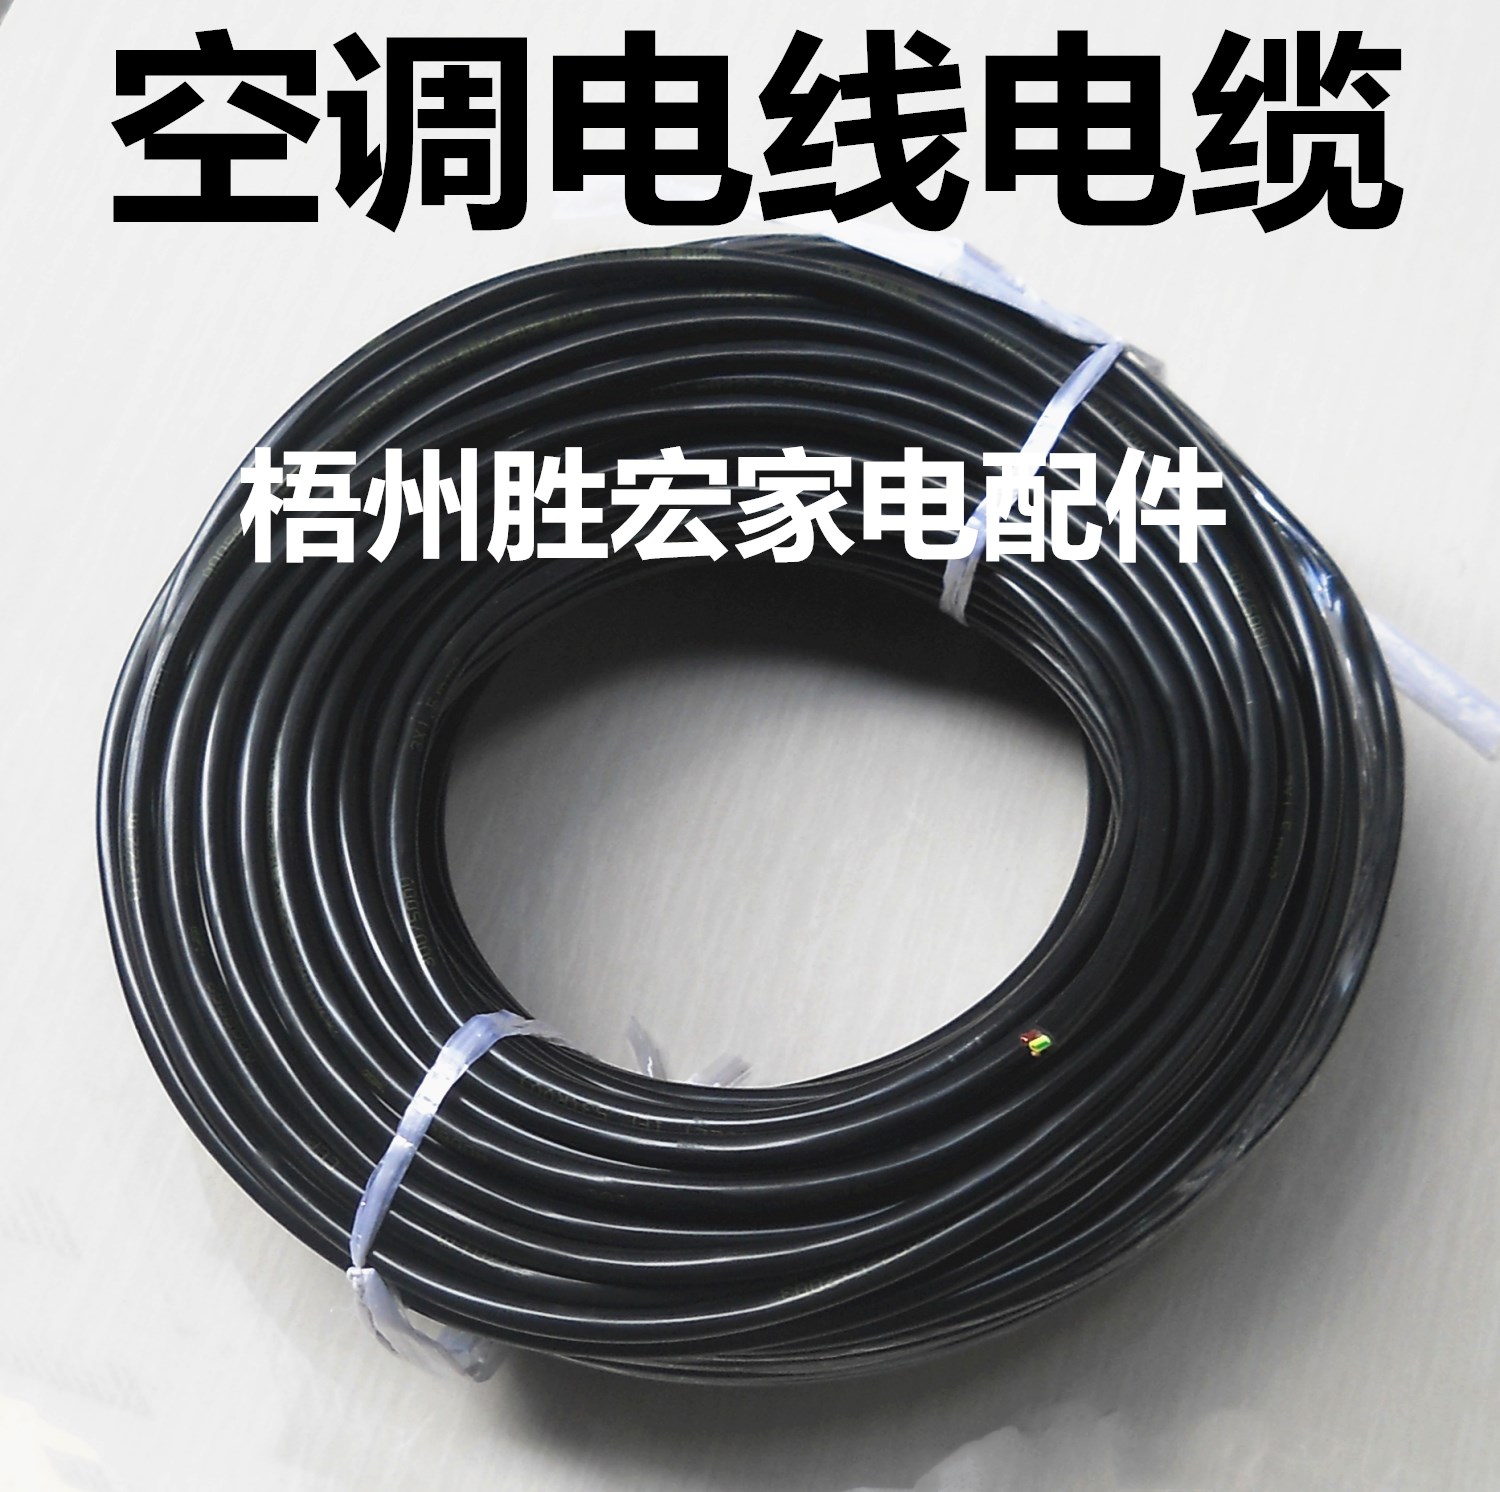 空调电缆线 内外机连接线 纯铜芯电源线 空调专用RVV电线电缆